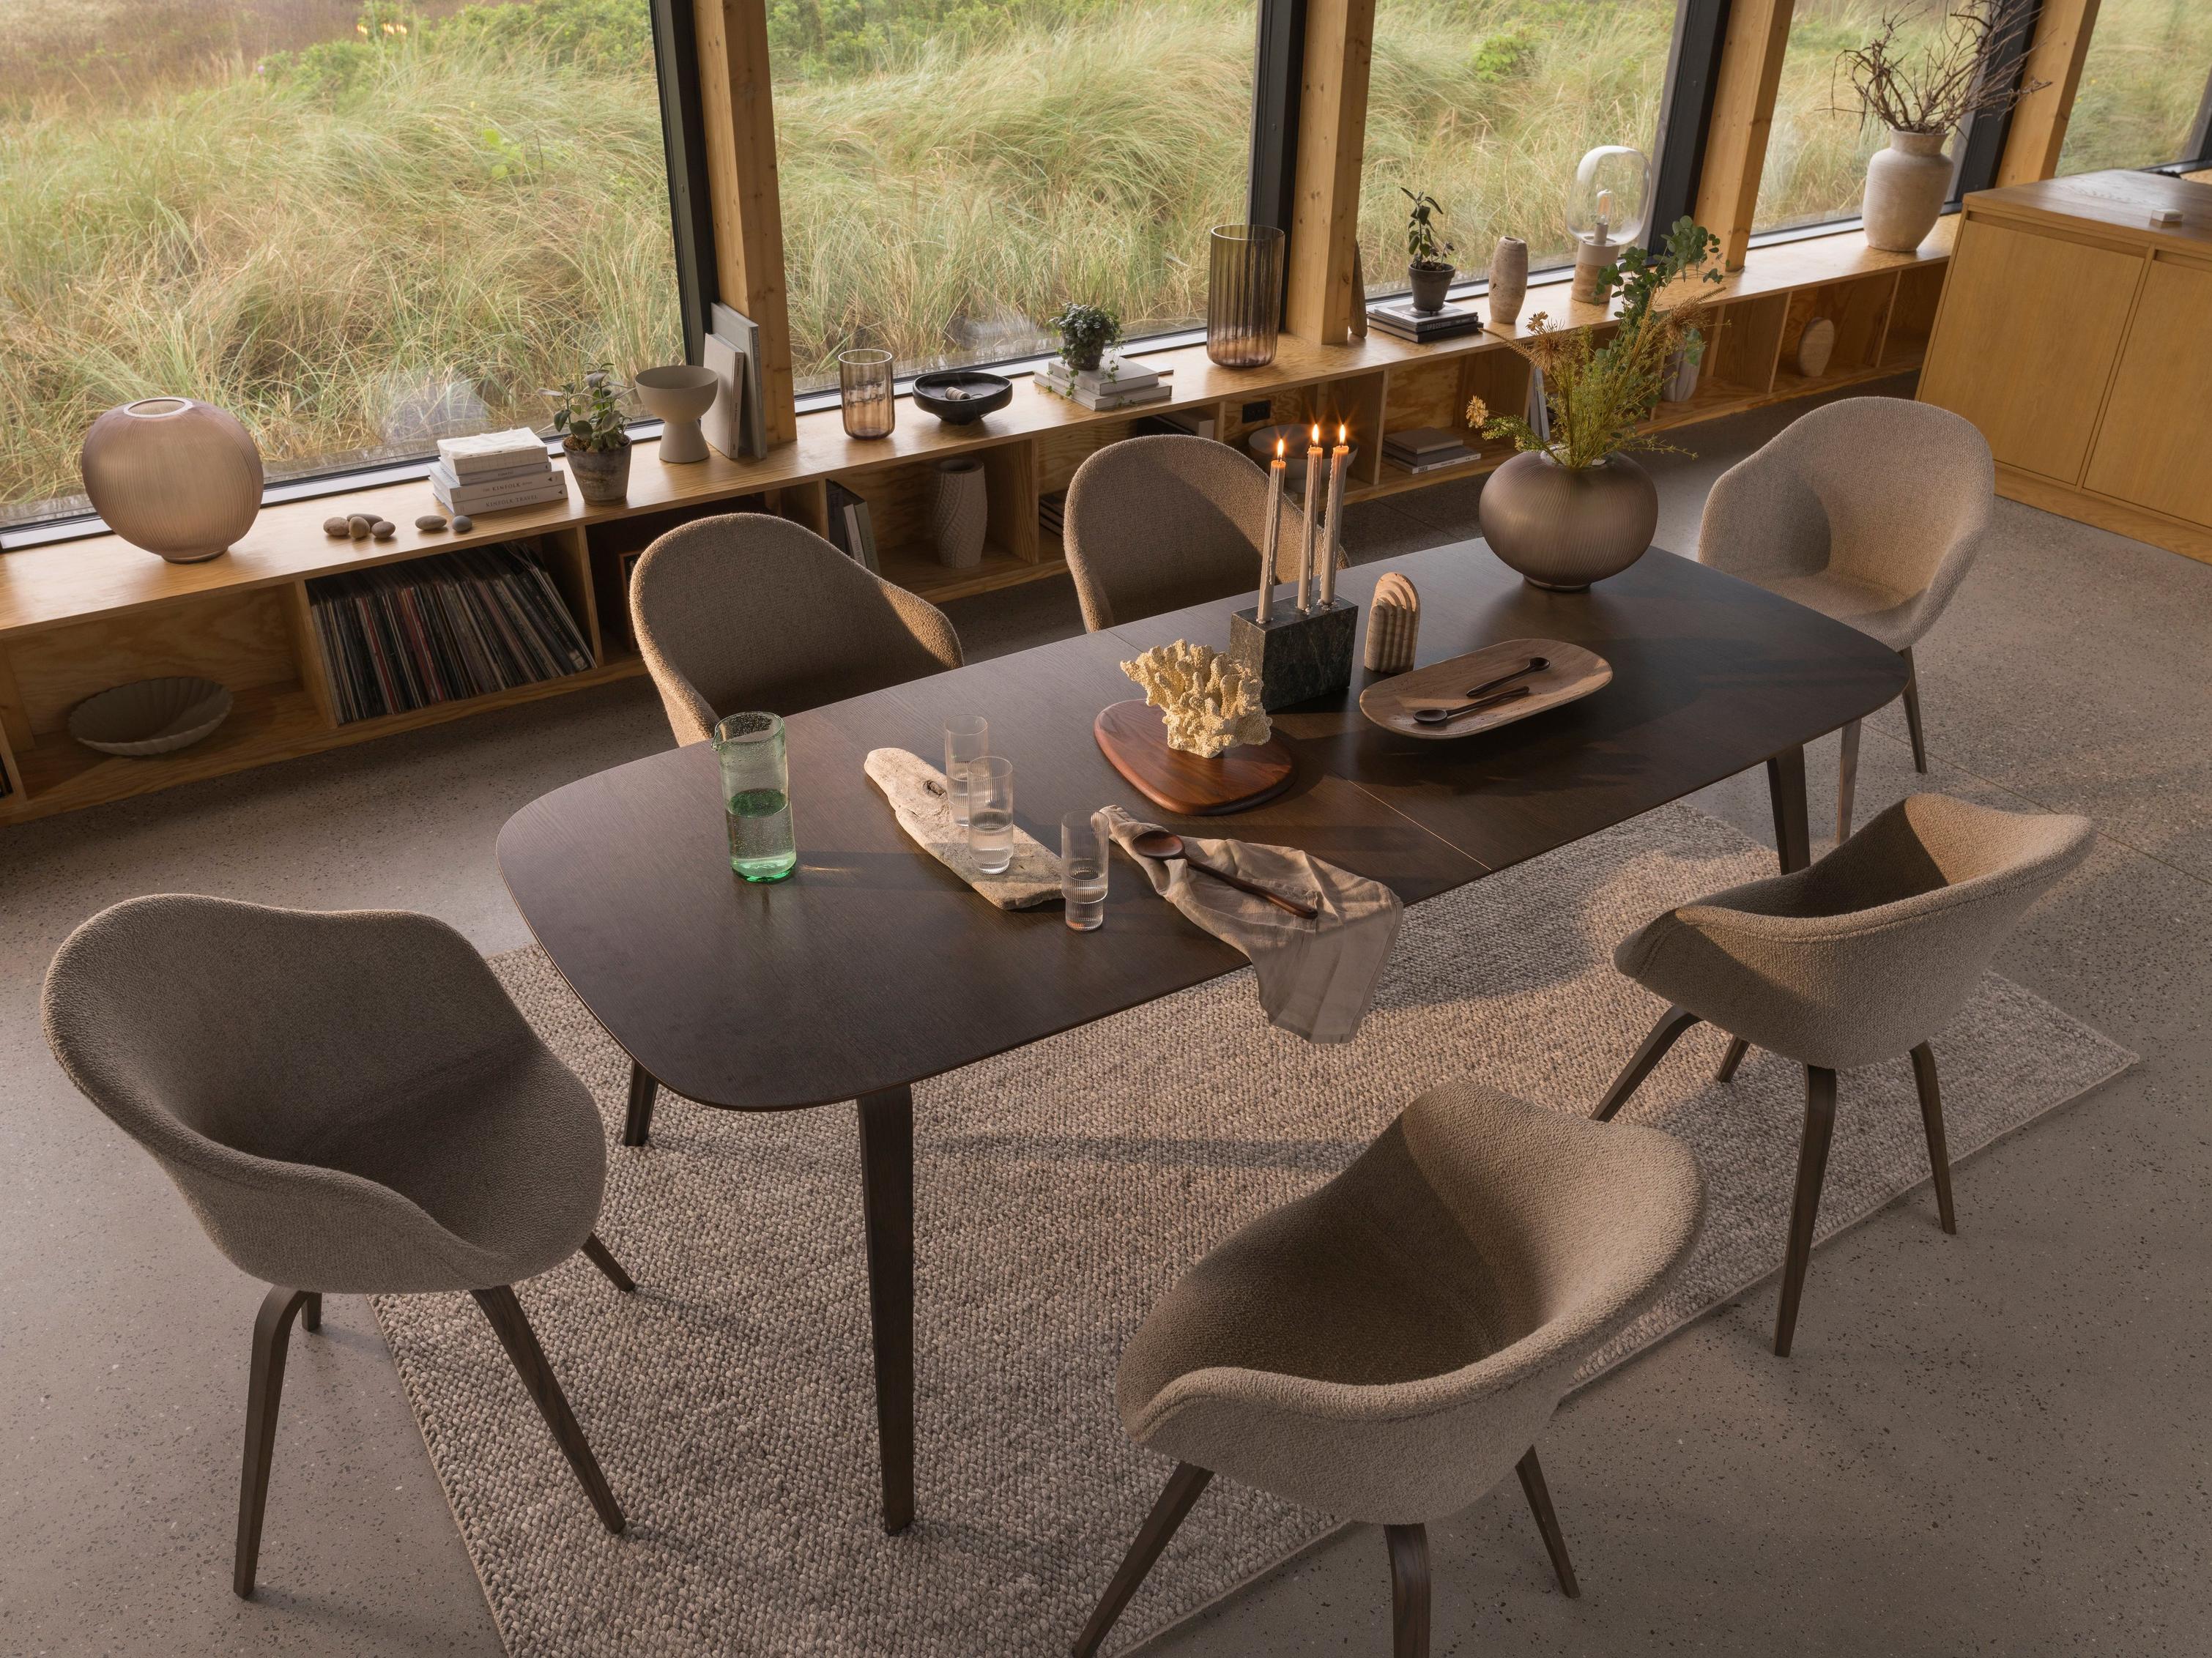 Hauge 餐桌和餐椅利用自然元素营造有机餐厅氛围。